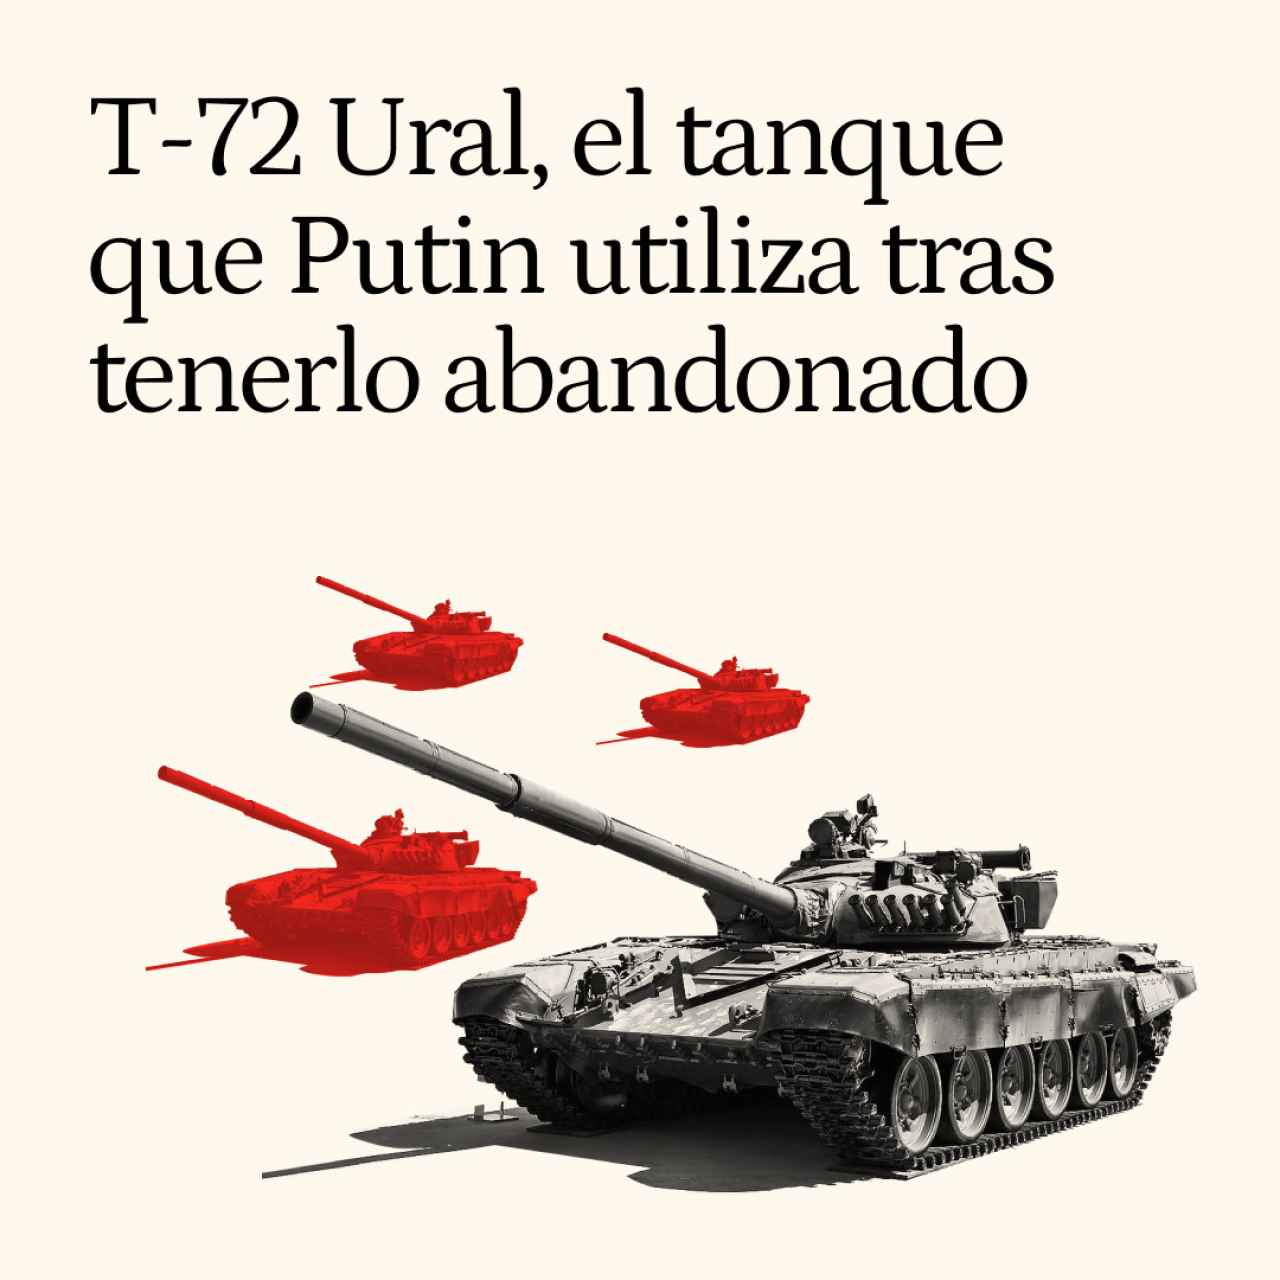 T-72 Ural, el tanque ruso que Putin utiliza a la desesperada tras tenerlo abandonado en almacenes